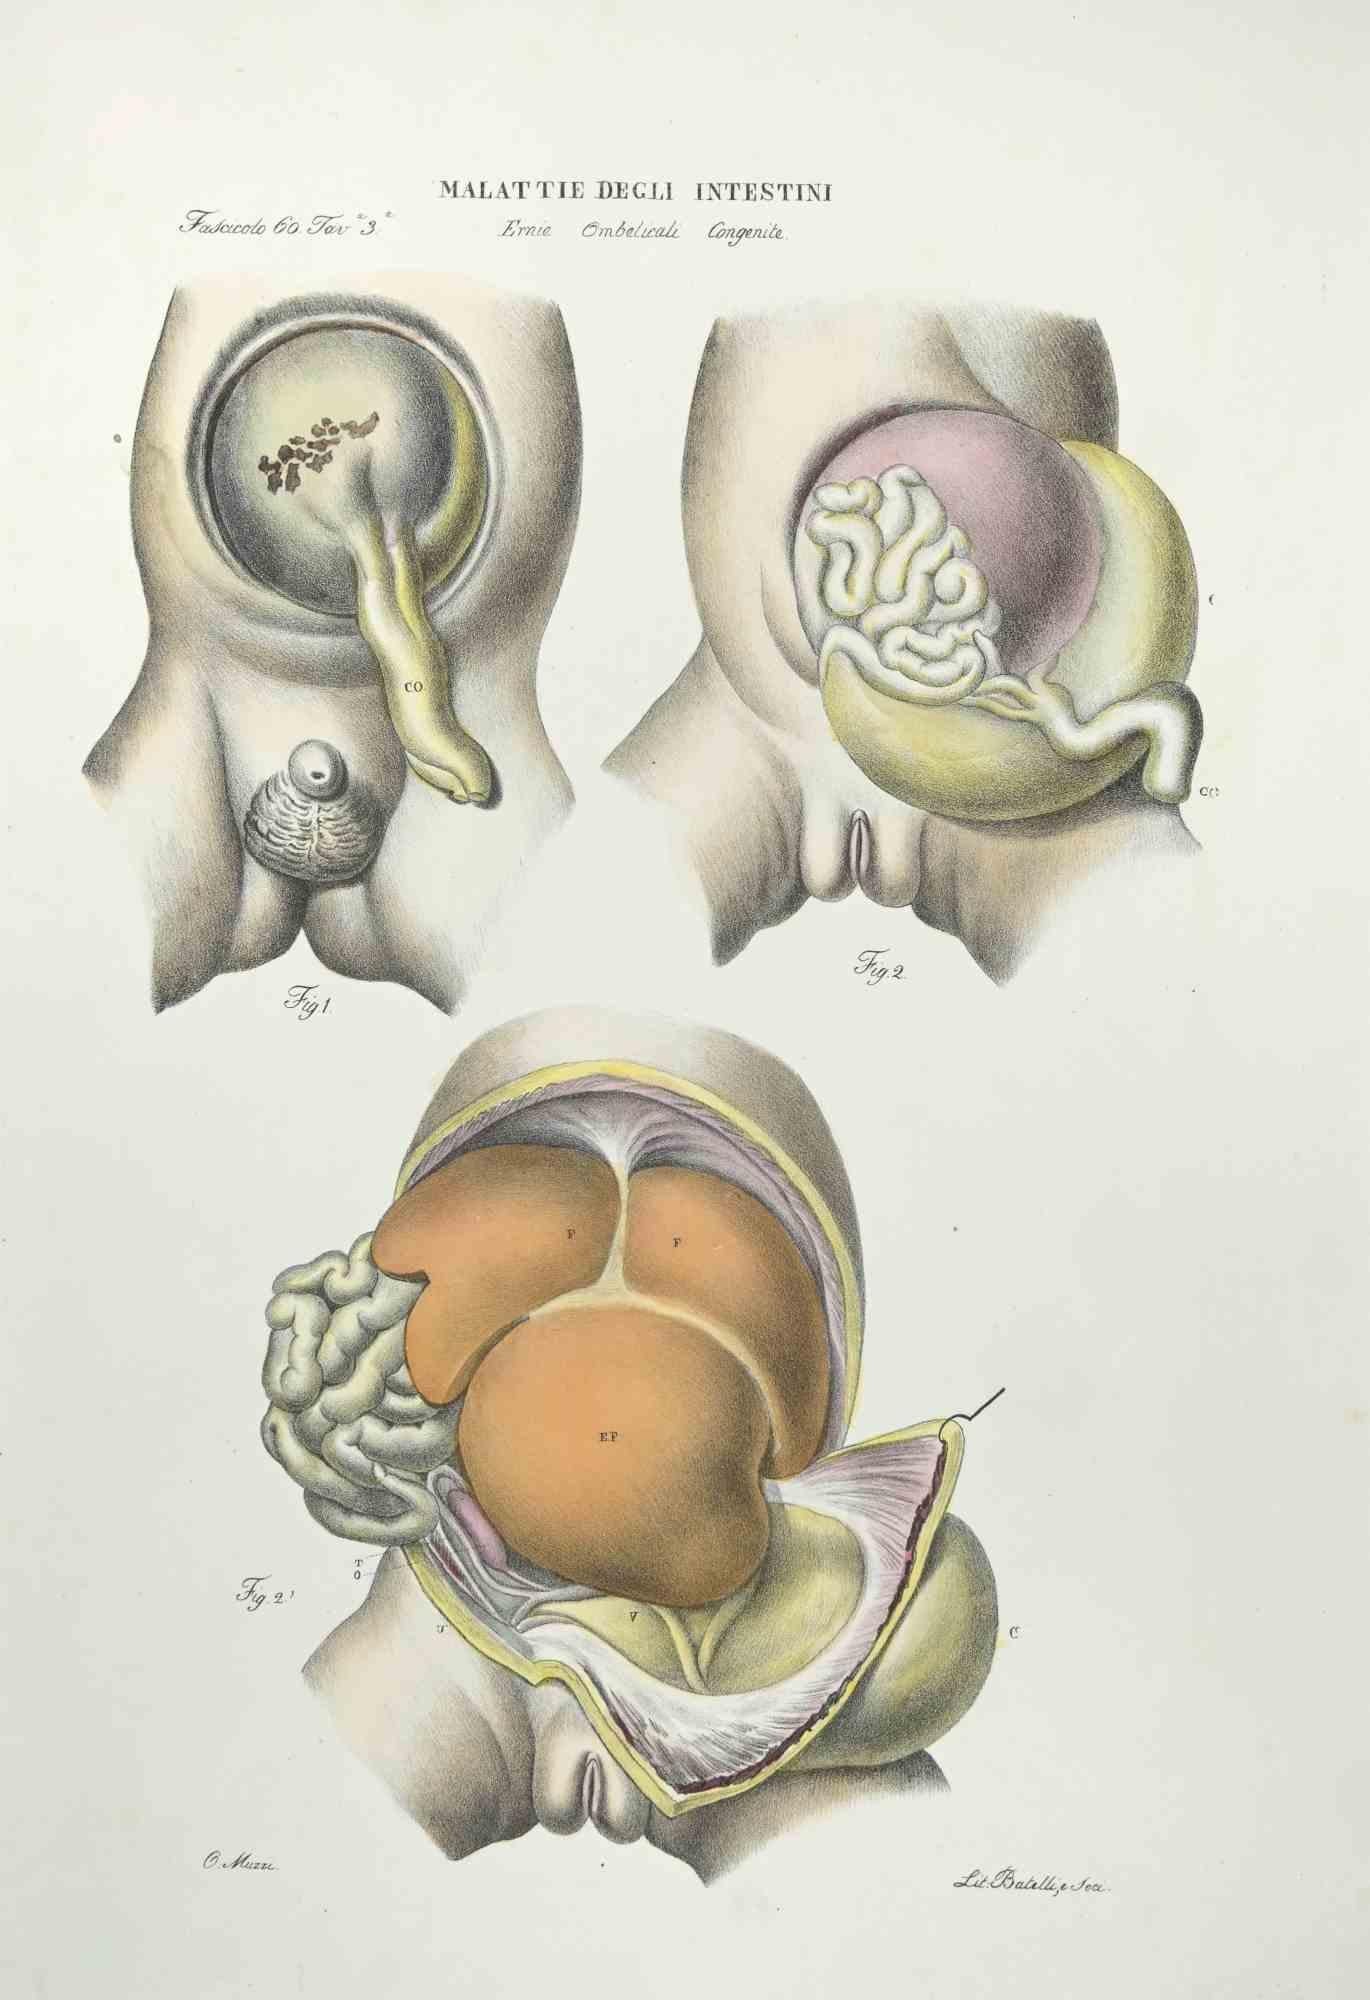 Diseases of the Intestines ist eine handkolorierte Lithographie von Ottavio Muzzi für die Ausgabe von Antoine Chazal, Human Anatomy, Druckerei Batelli und Ridolfi, aus dem Jahr 1843.

Signiert auf der Platte am unteren linken Rand.

Das Kunstwerk